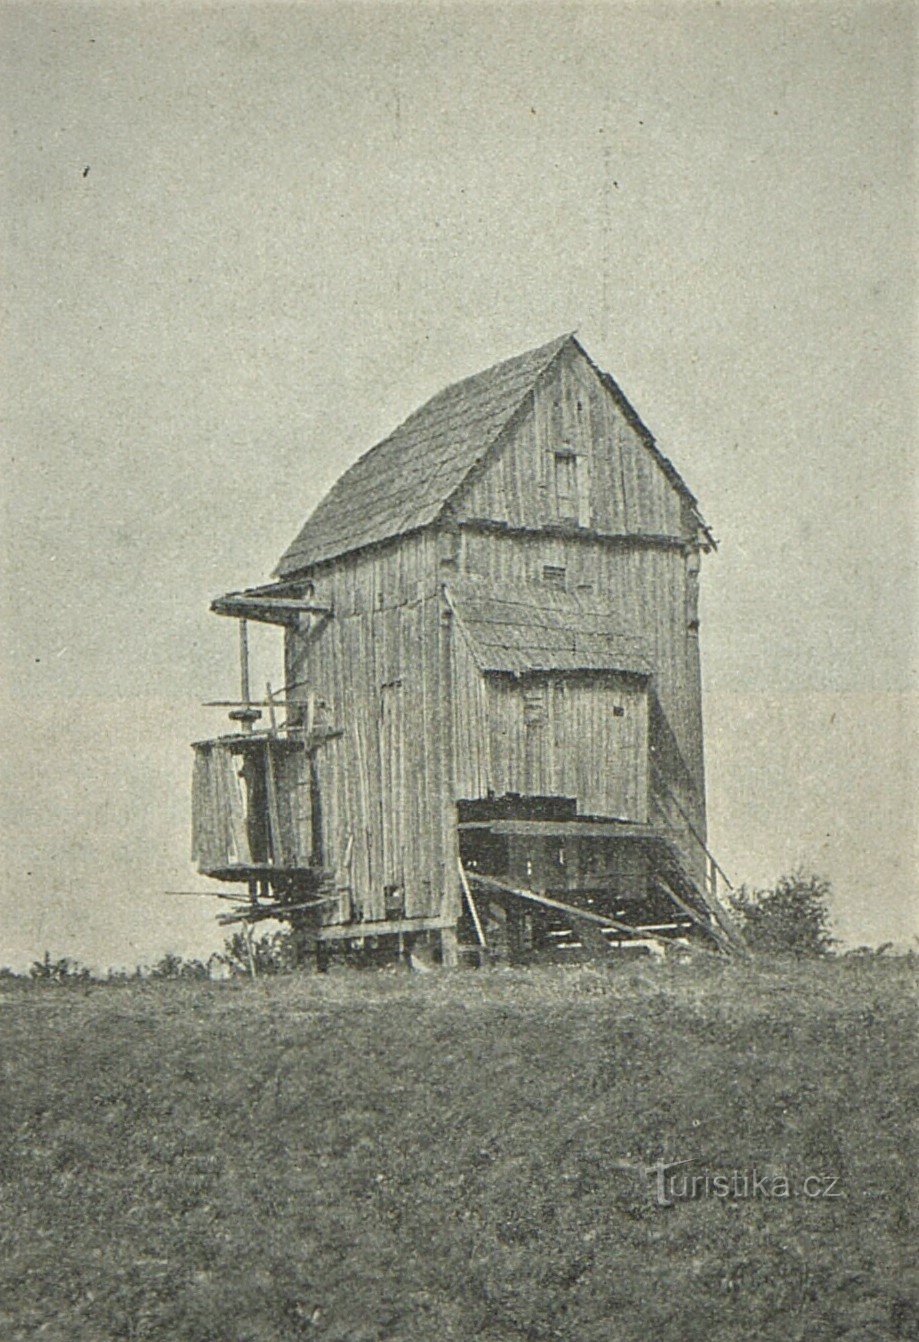 Фото вітряка Добльніце 1909 року